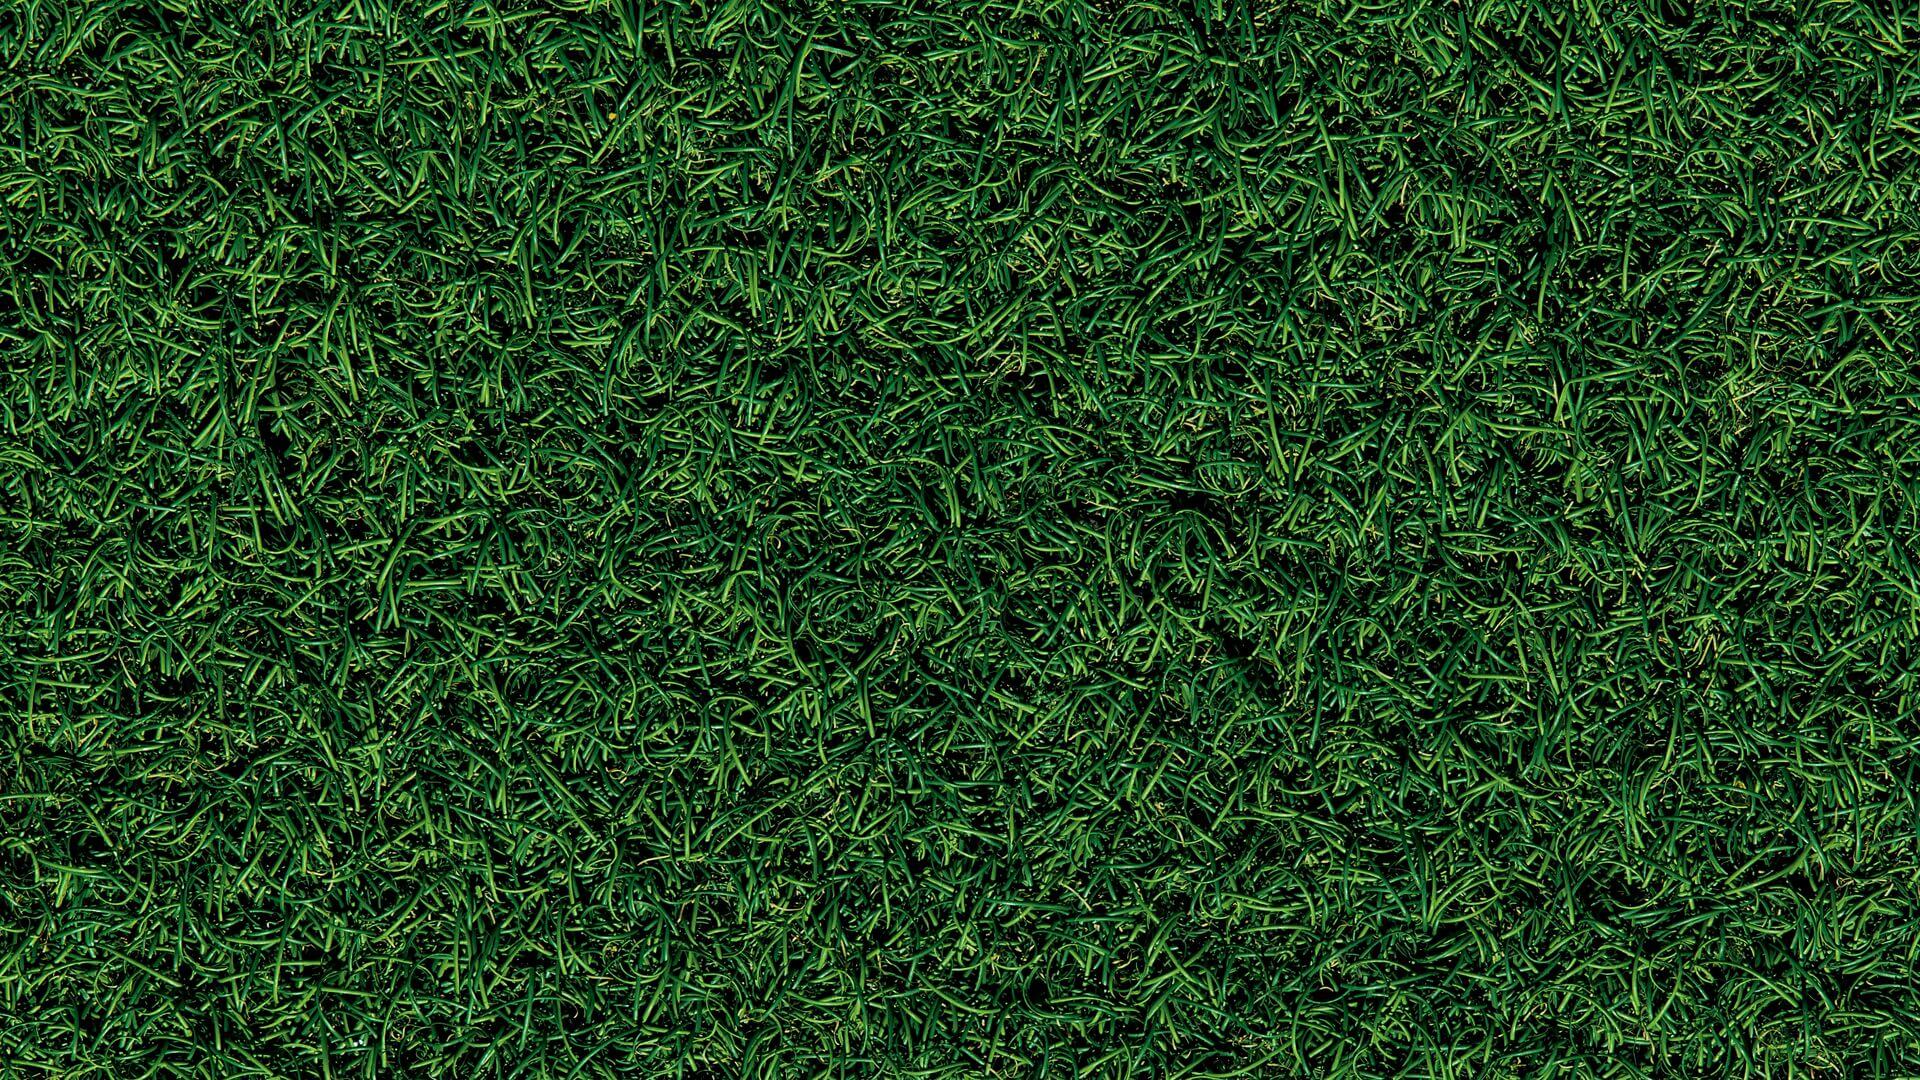 Artificial Grass News